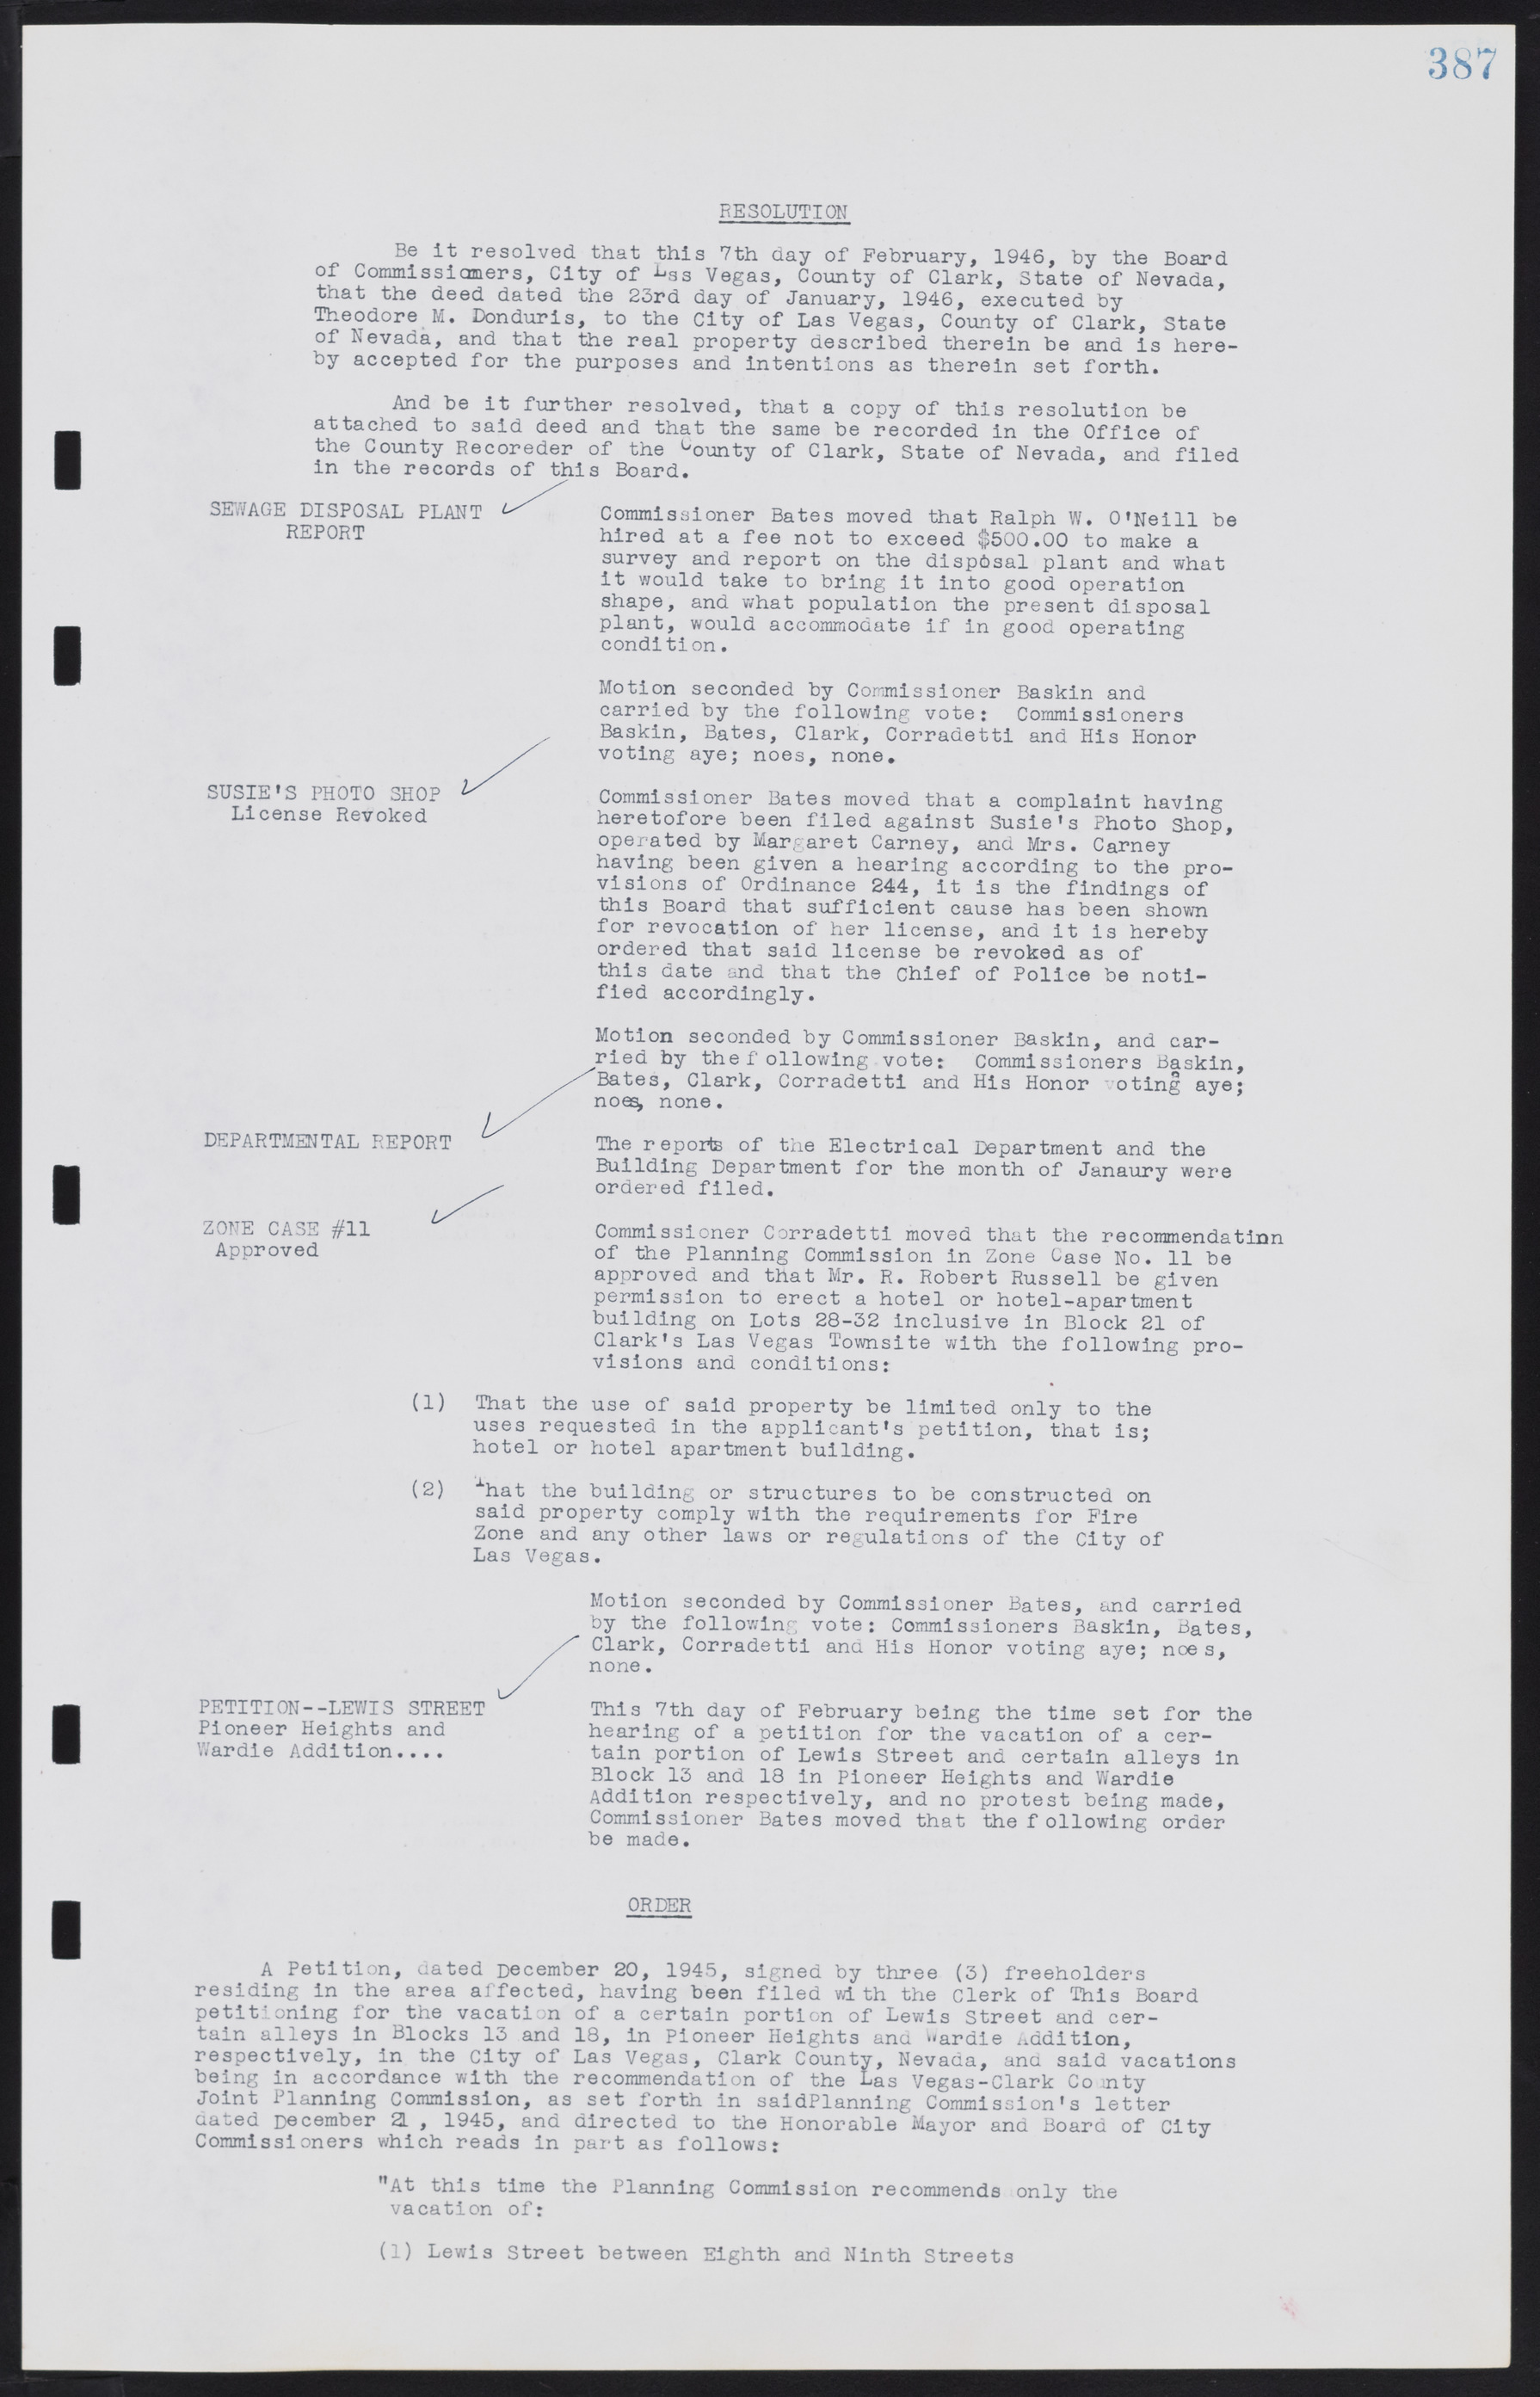 Las Vegas City Commission Minutes, August 11, 1942 to December 30, 1946, lvc000005-414